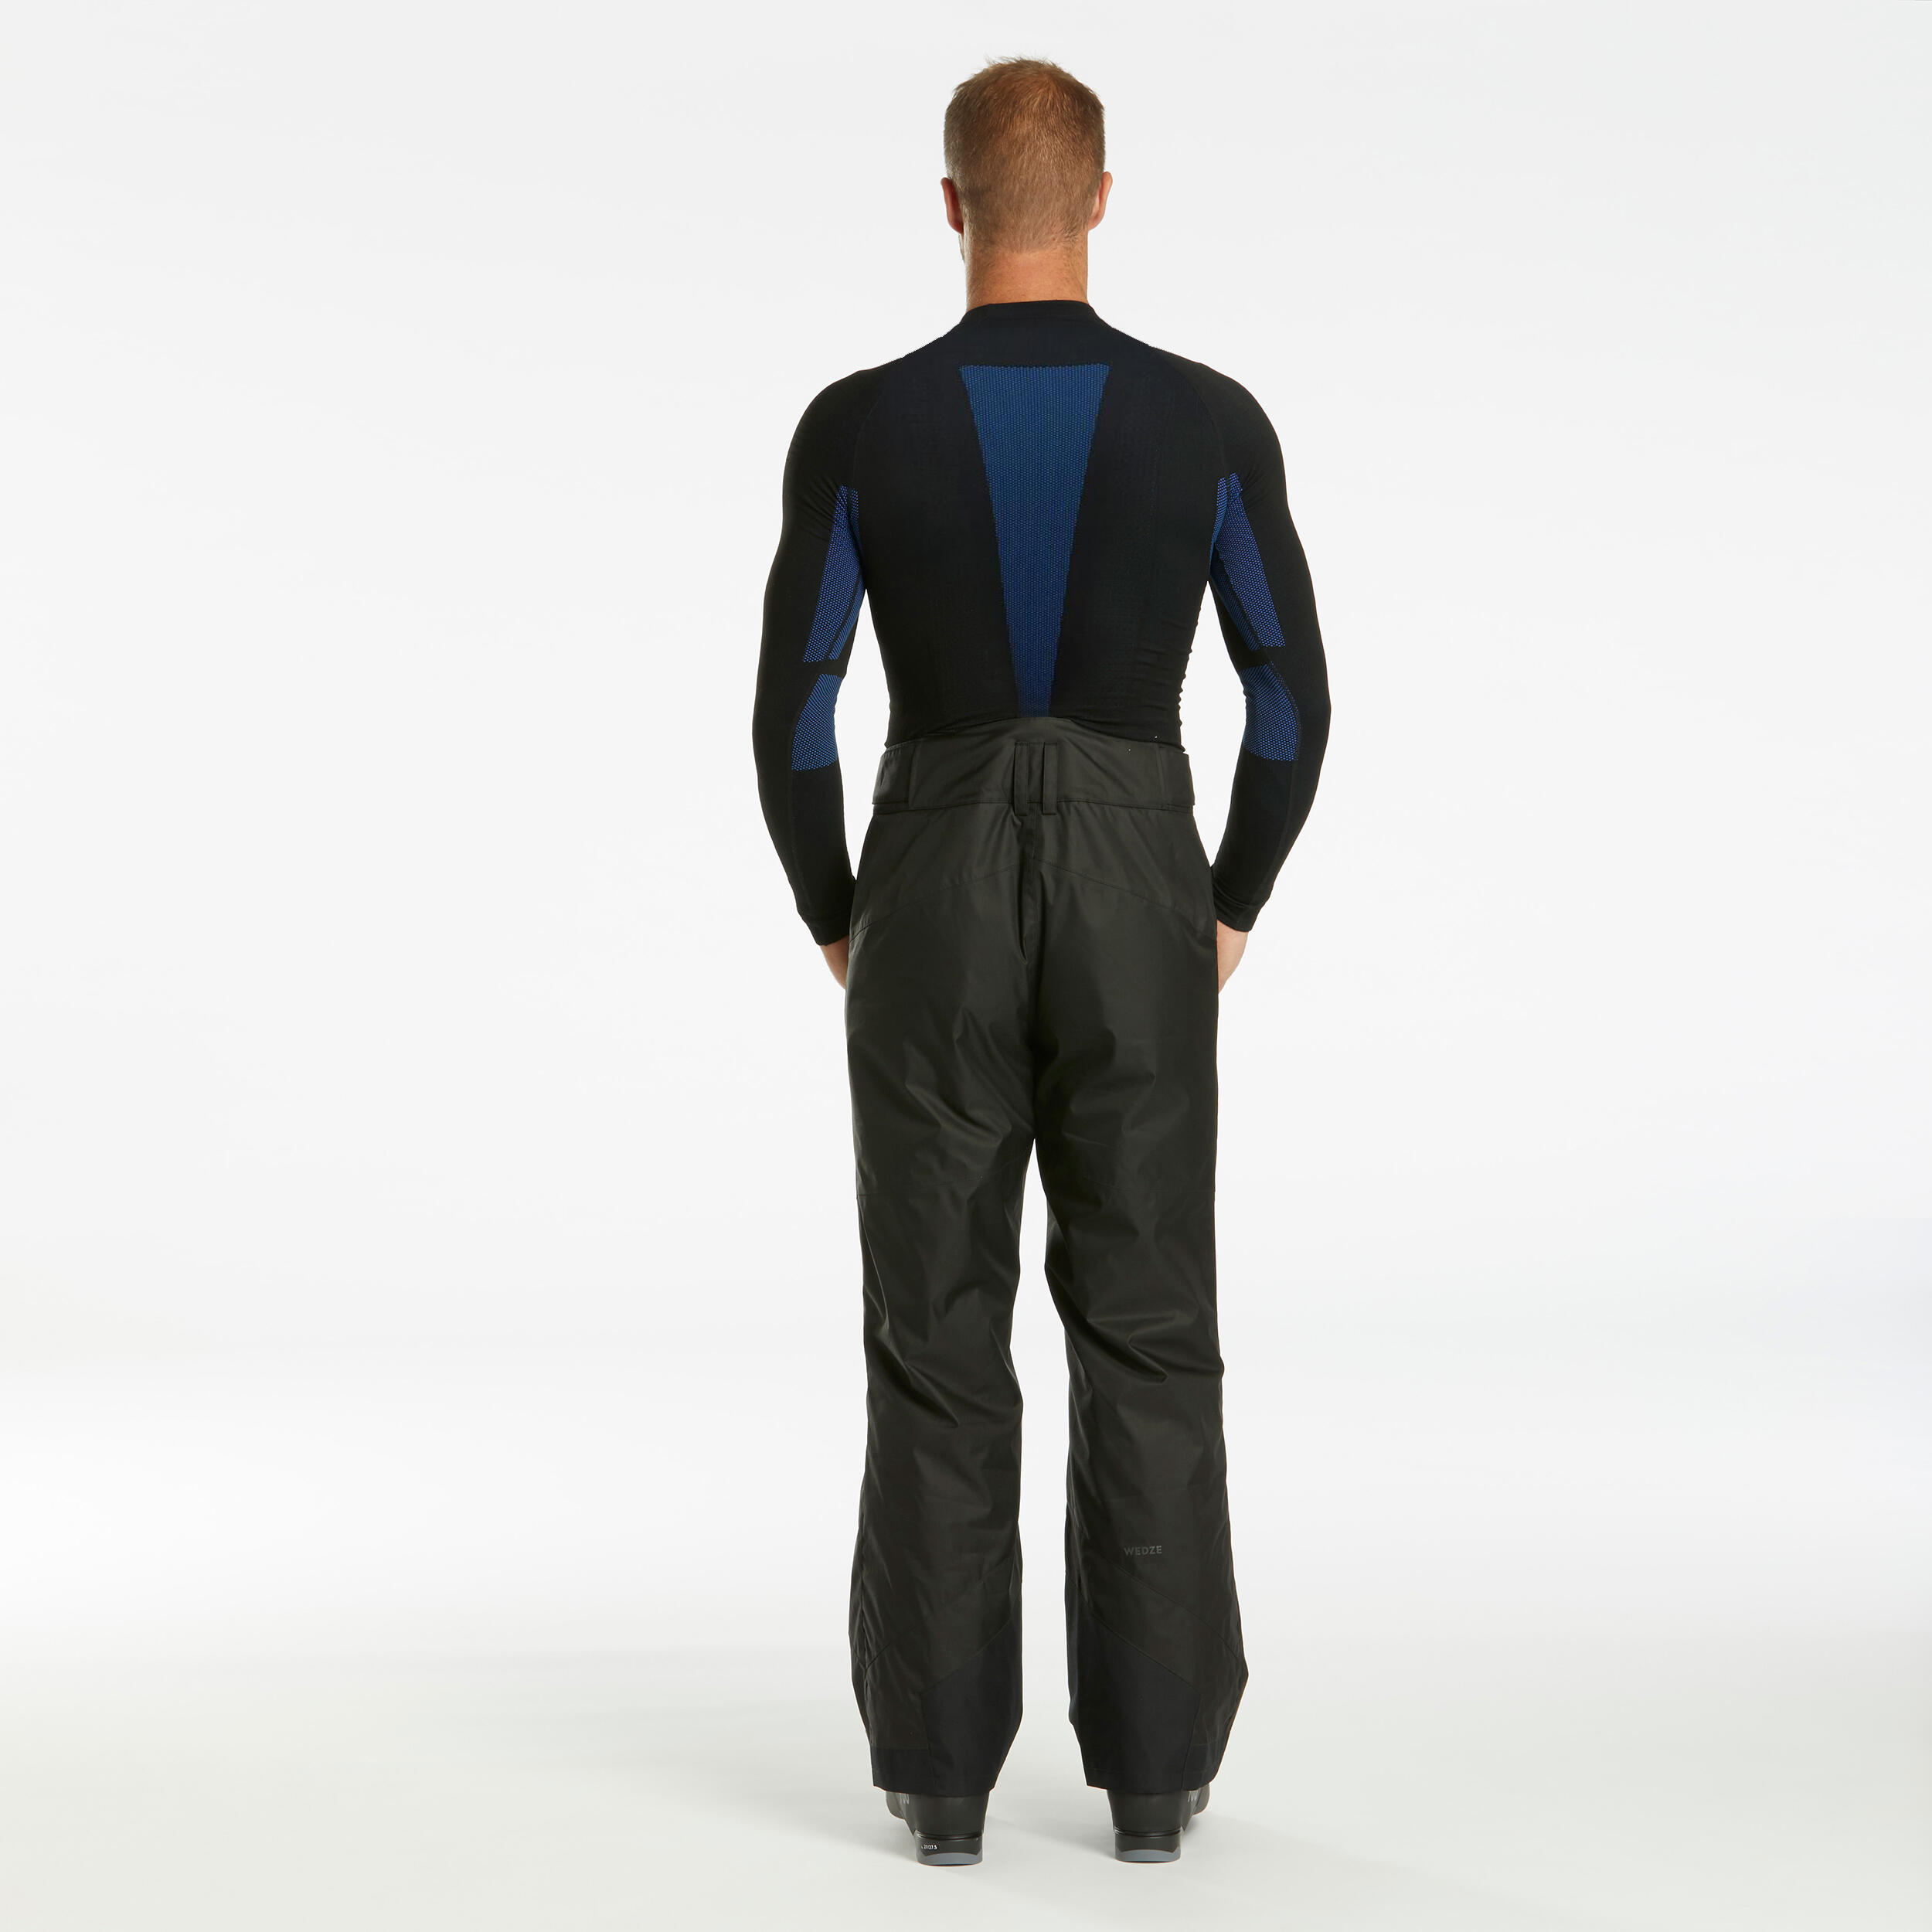 Pantalon de ski chaud homme – 180 noir - WEDZE